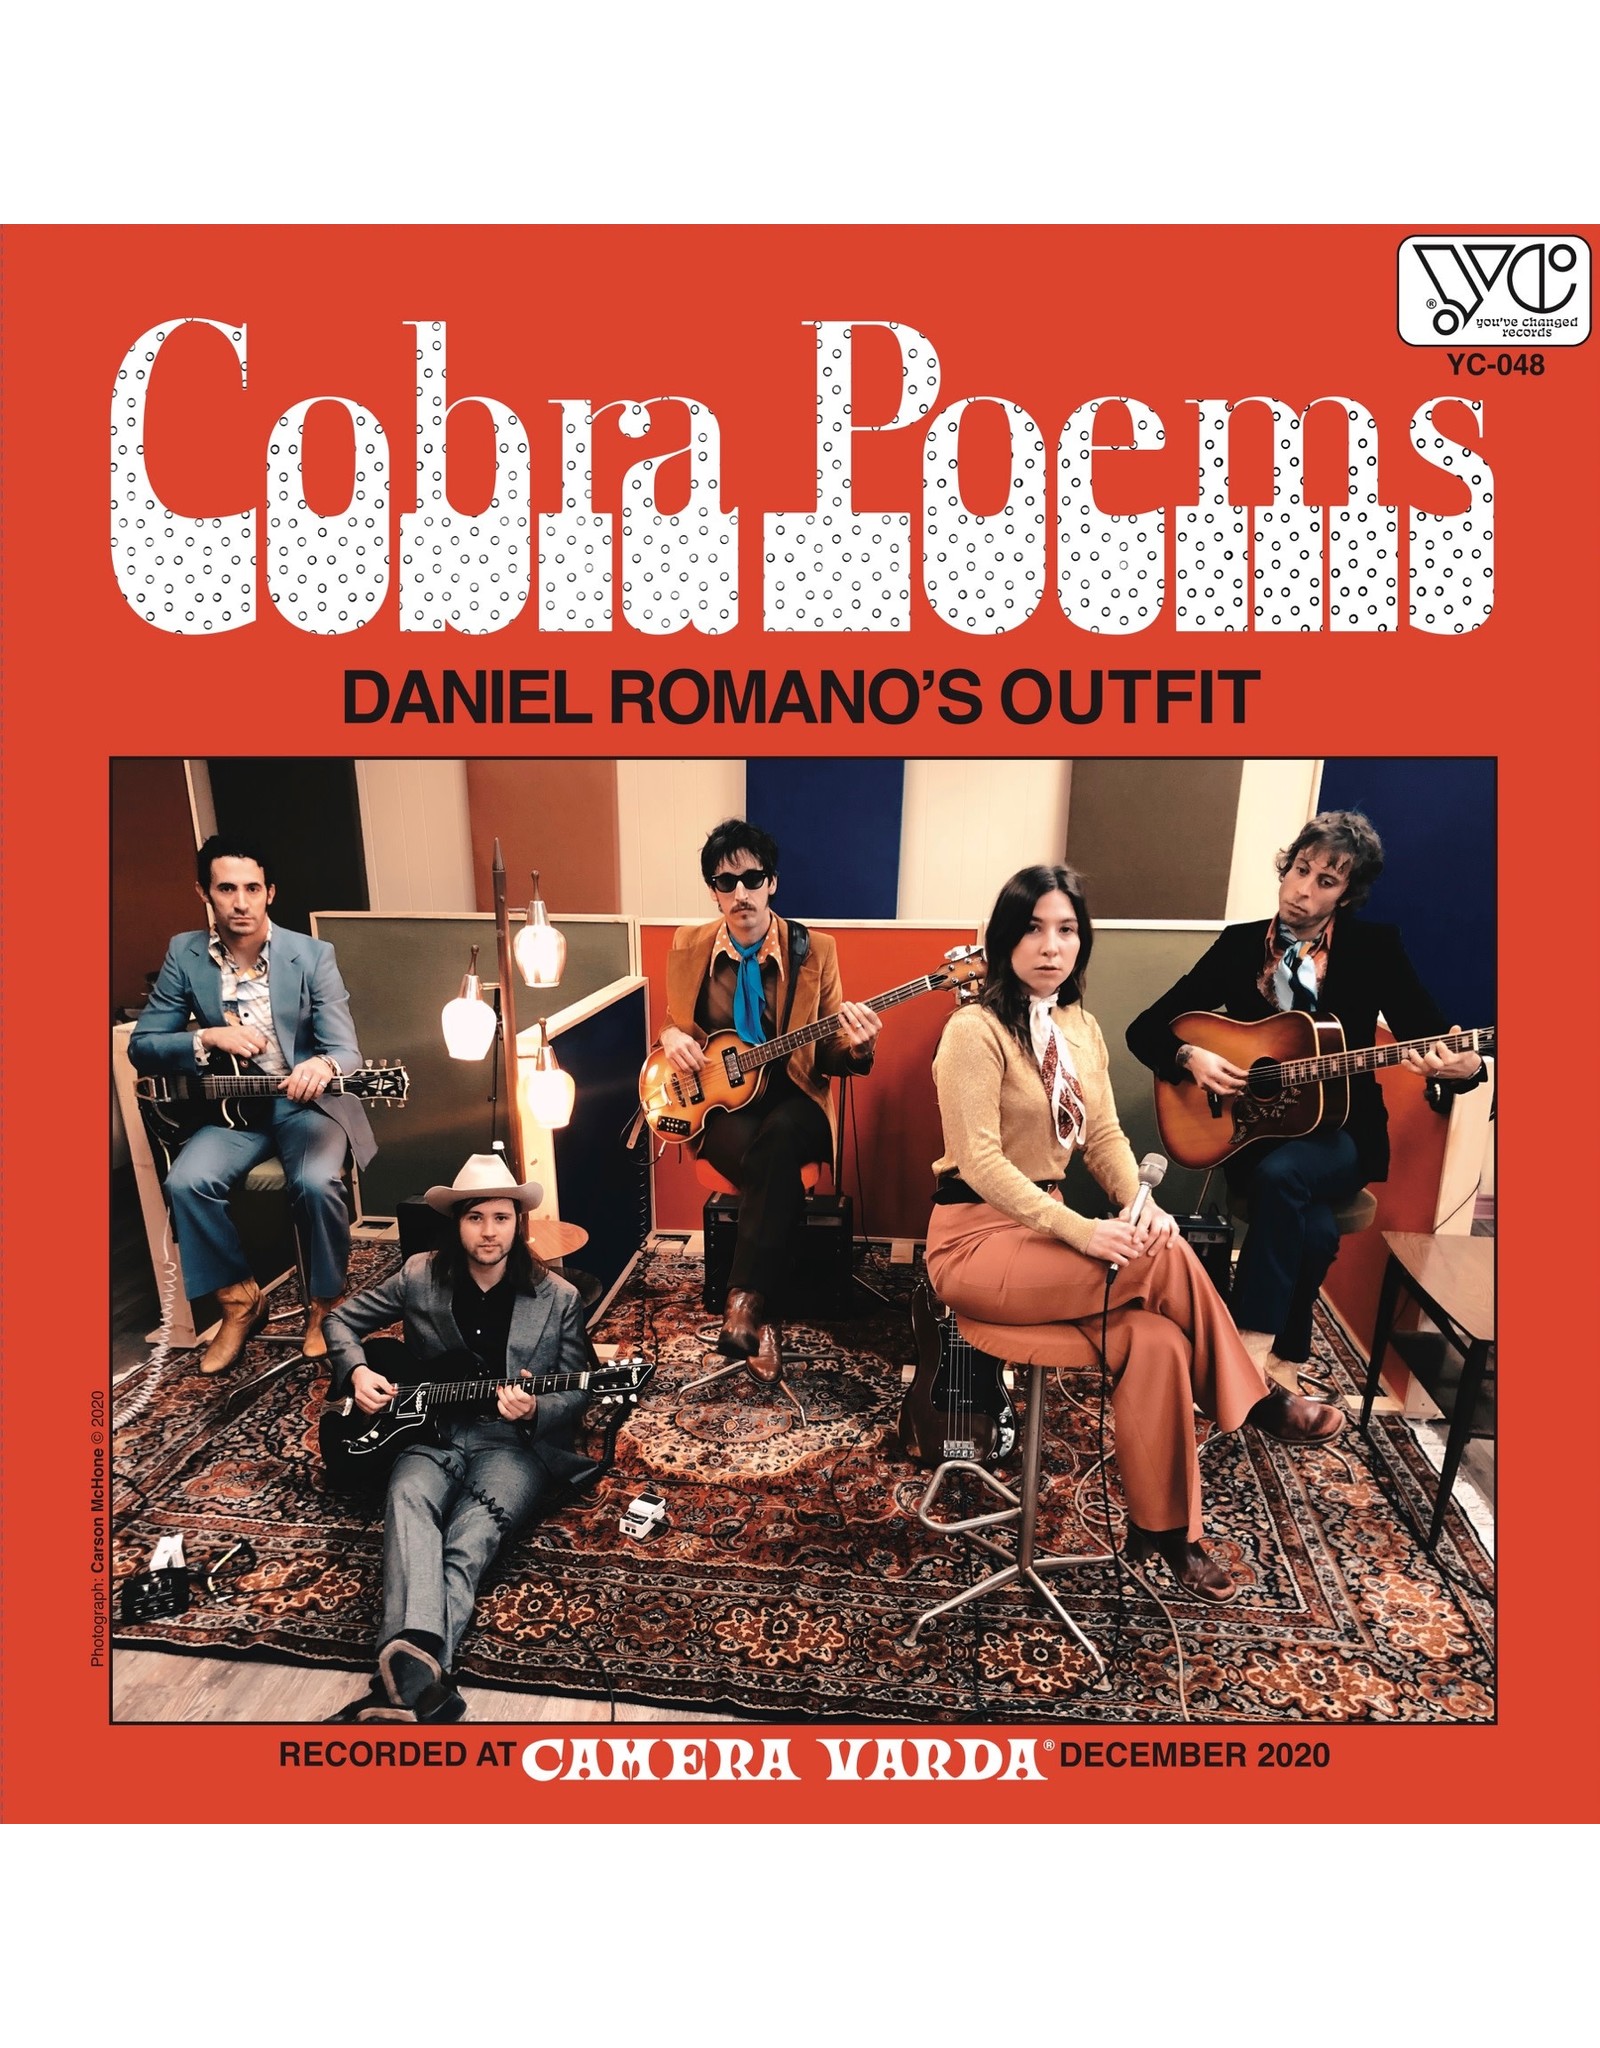 Romano, Daniel - Cobra Poems CD